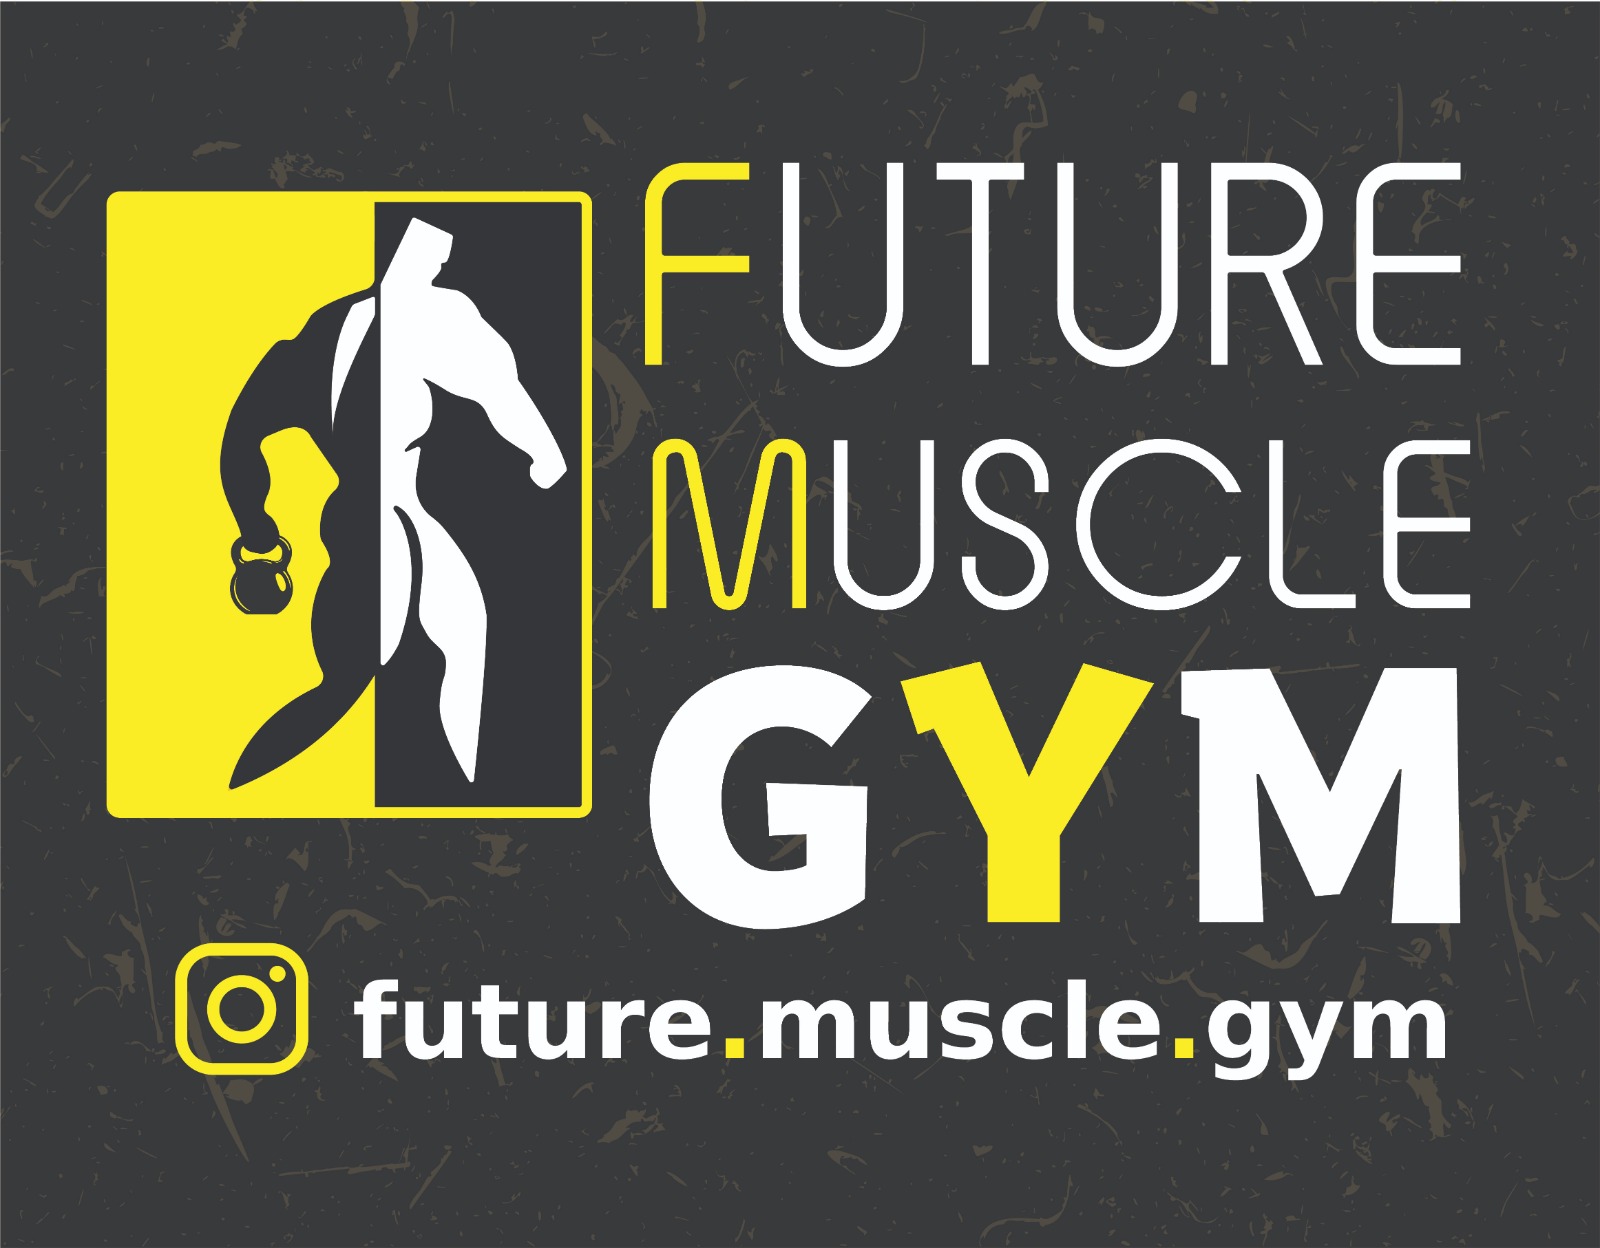 صالة وجيم عضلات المستقبل (مدينة حمد دوار 11)Future muscle Gym